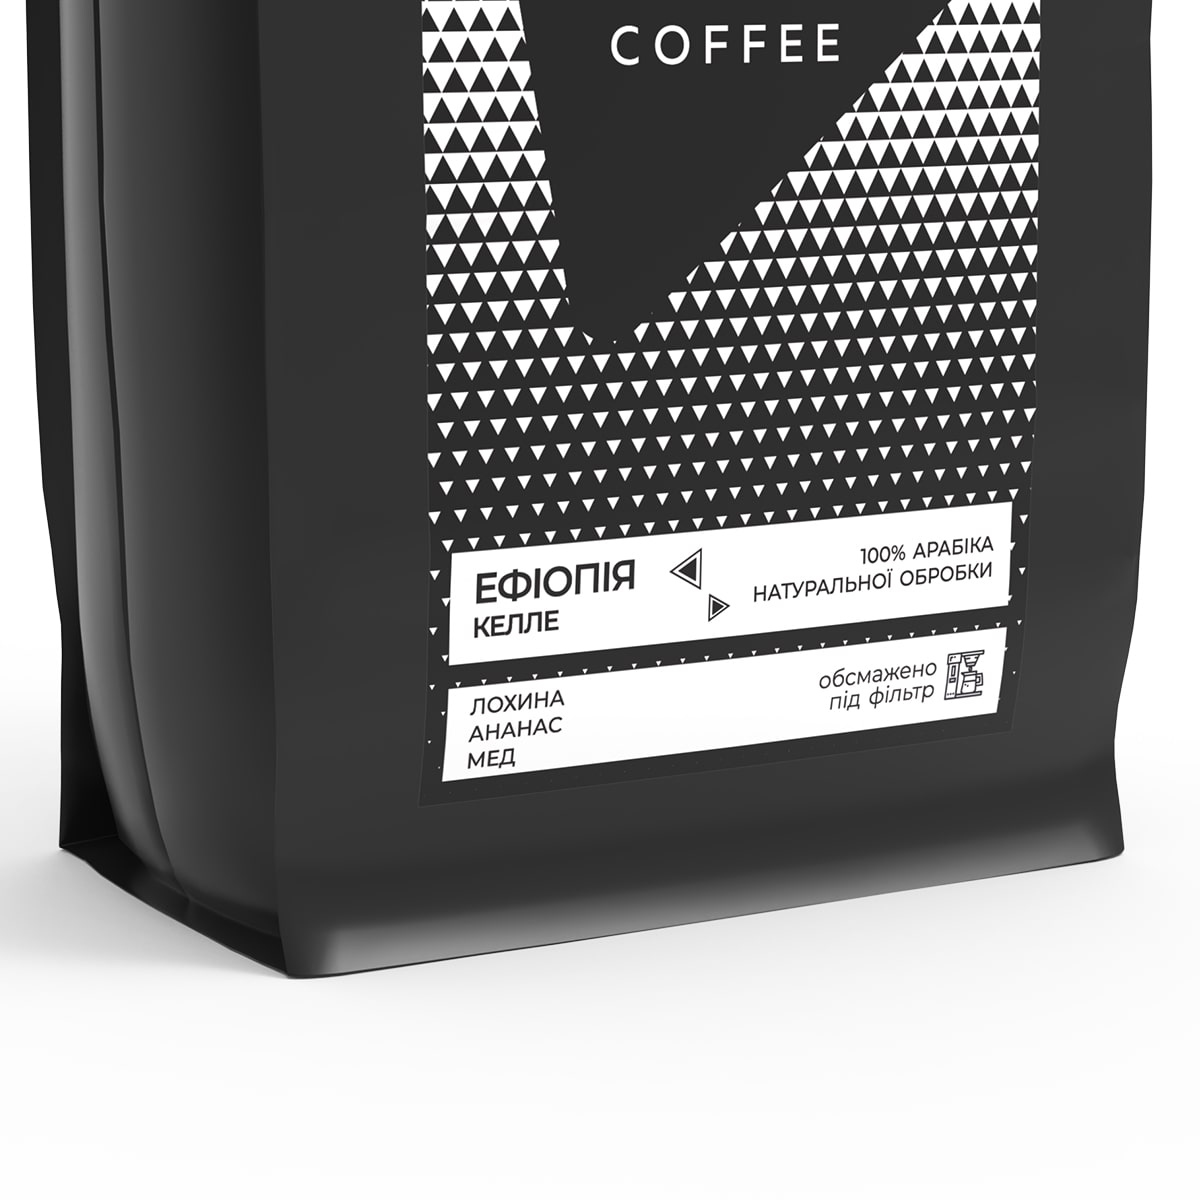 Кофе в зернах Bedoin Coffee Эфиопия Келле 1 кг - фото 2